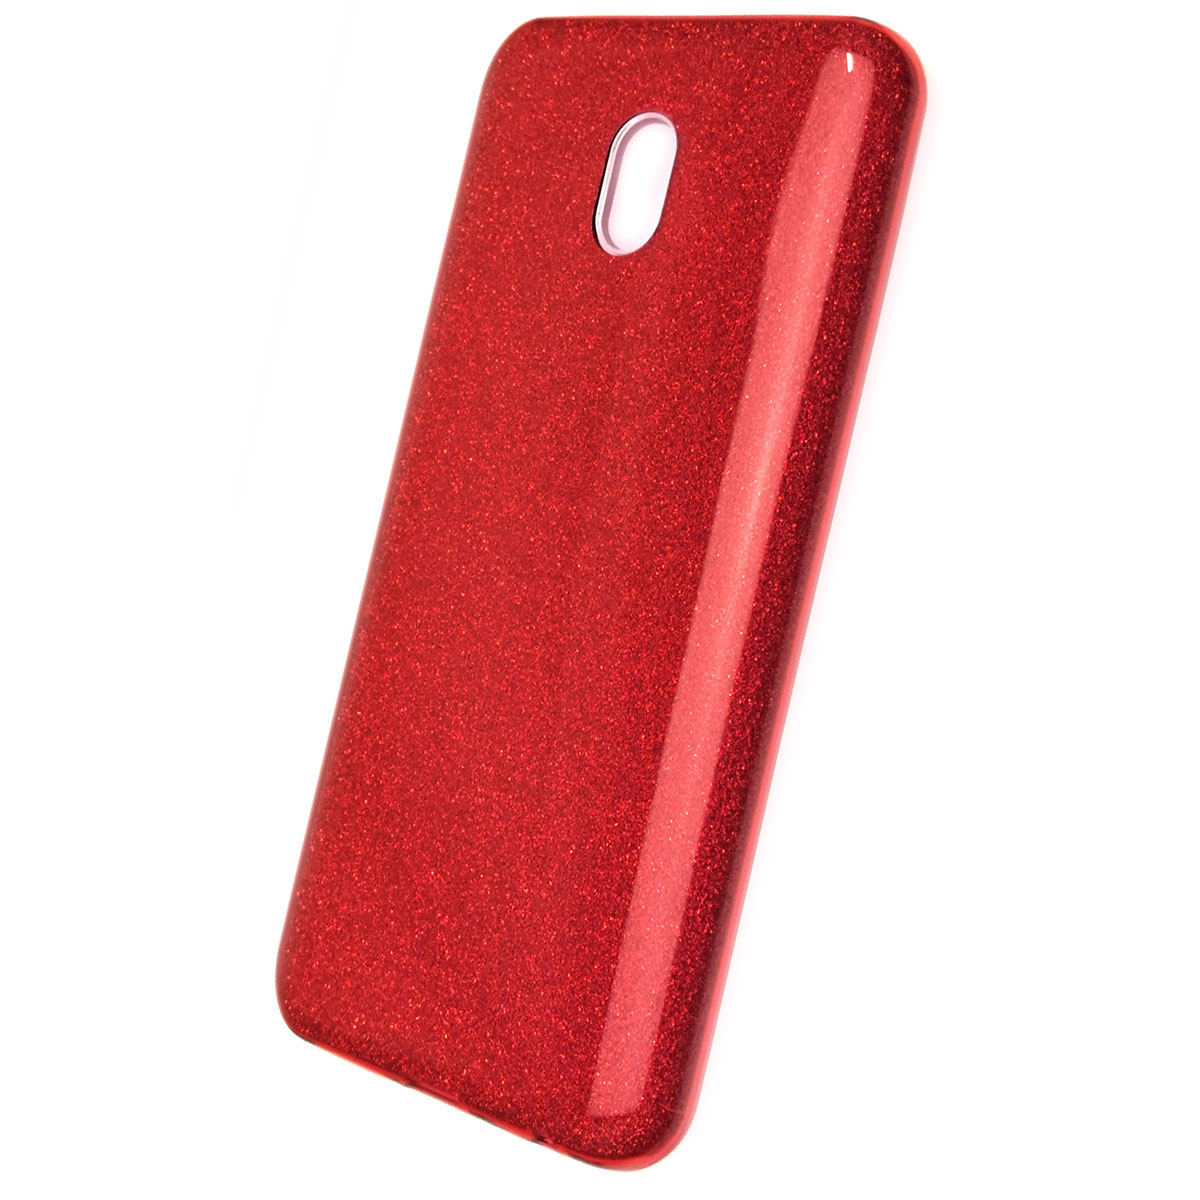 Чехол накладка для XIAOMI Redmi 8A, силикон, блестки, цвет красный.